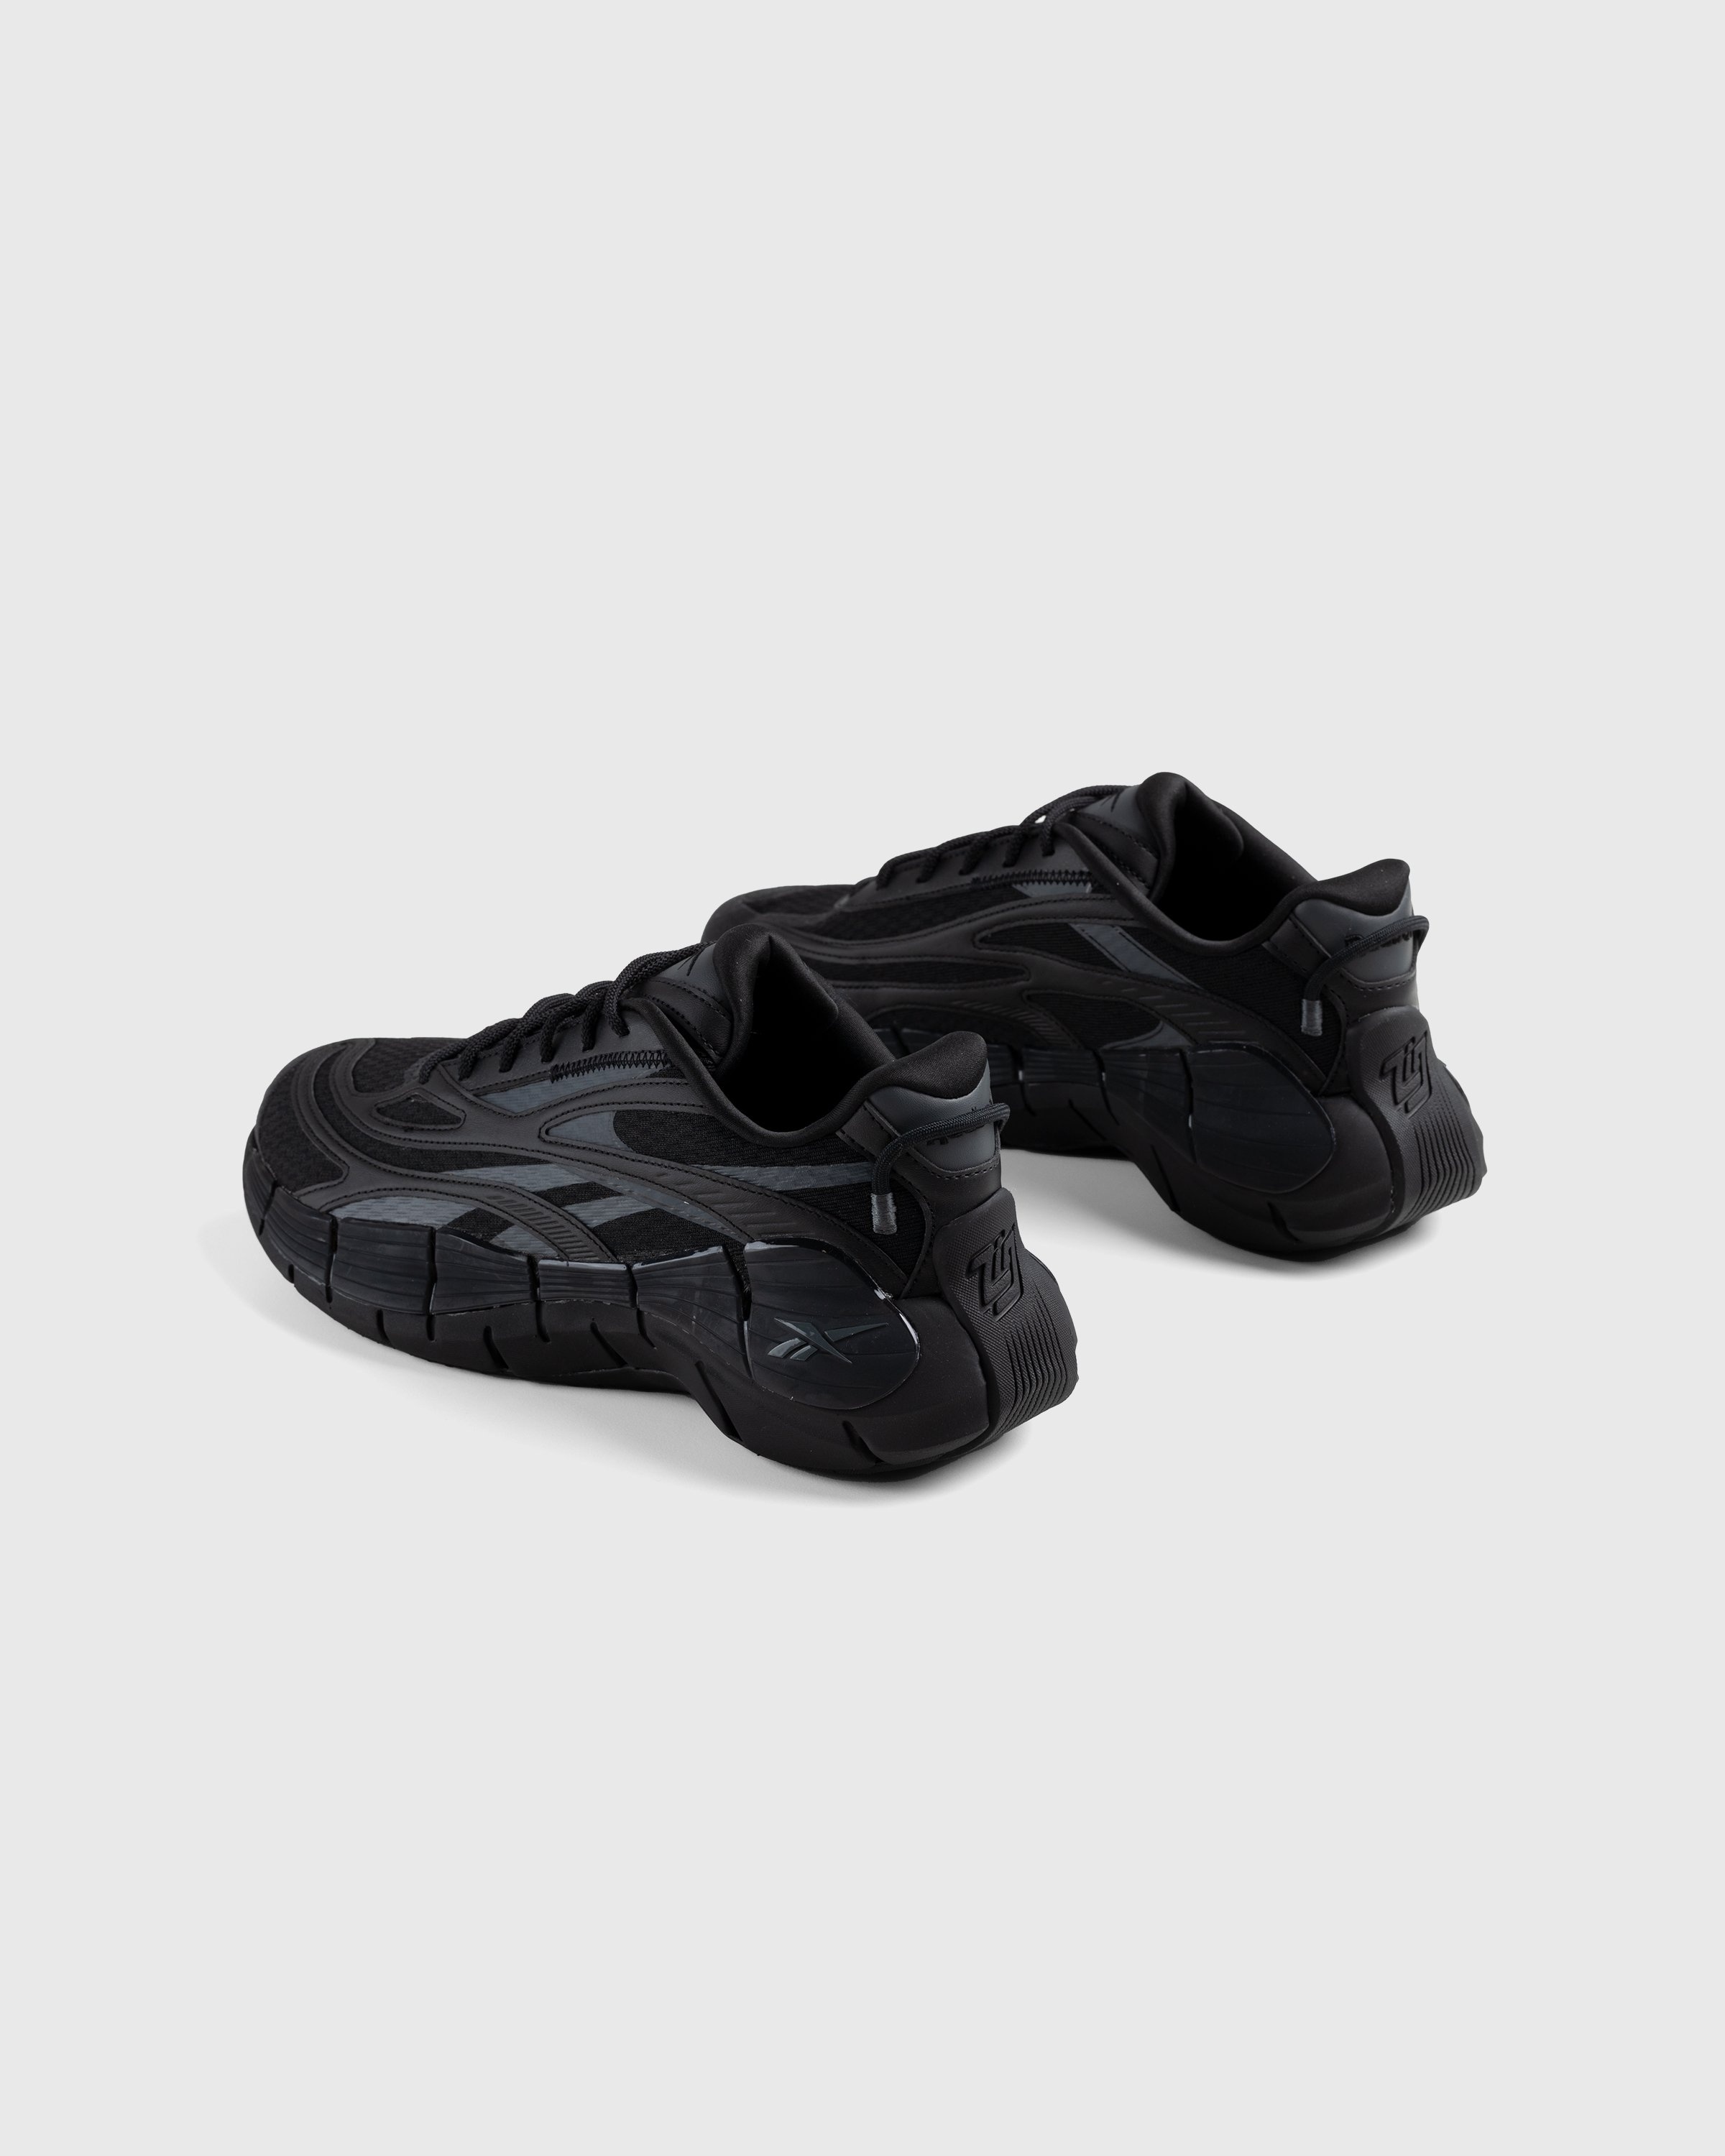 Reebok – Zig Kinetica 2.5 Black - Sneakers - Black - Image 2